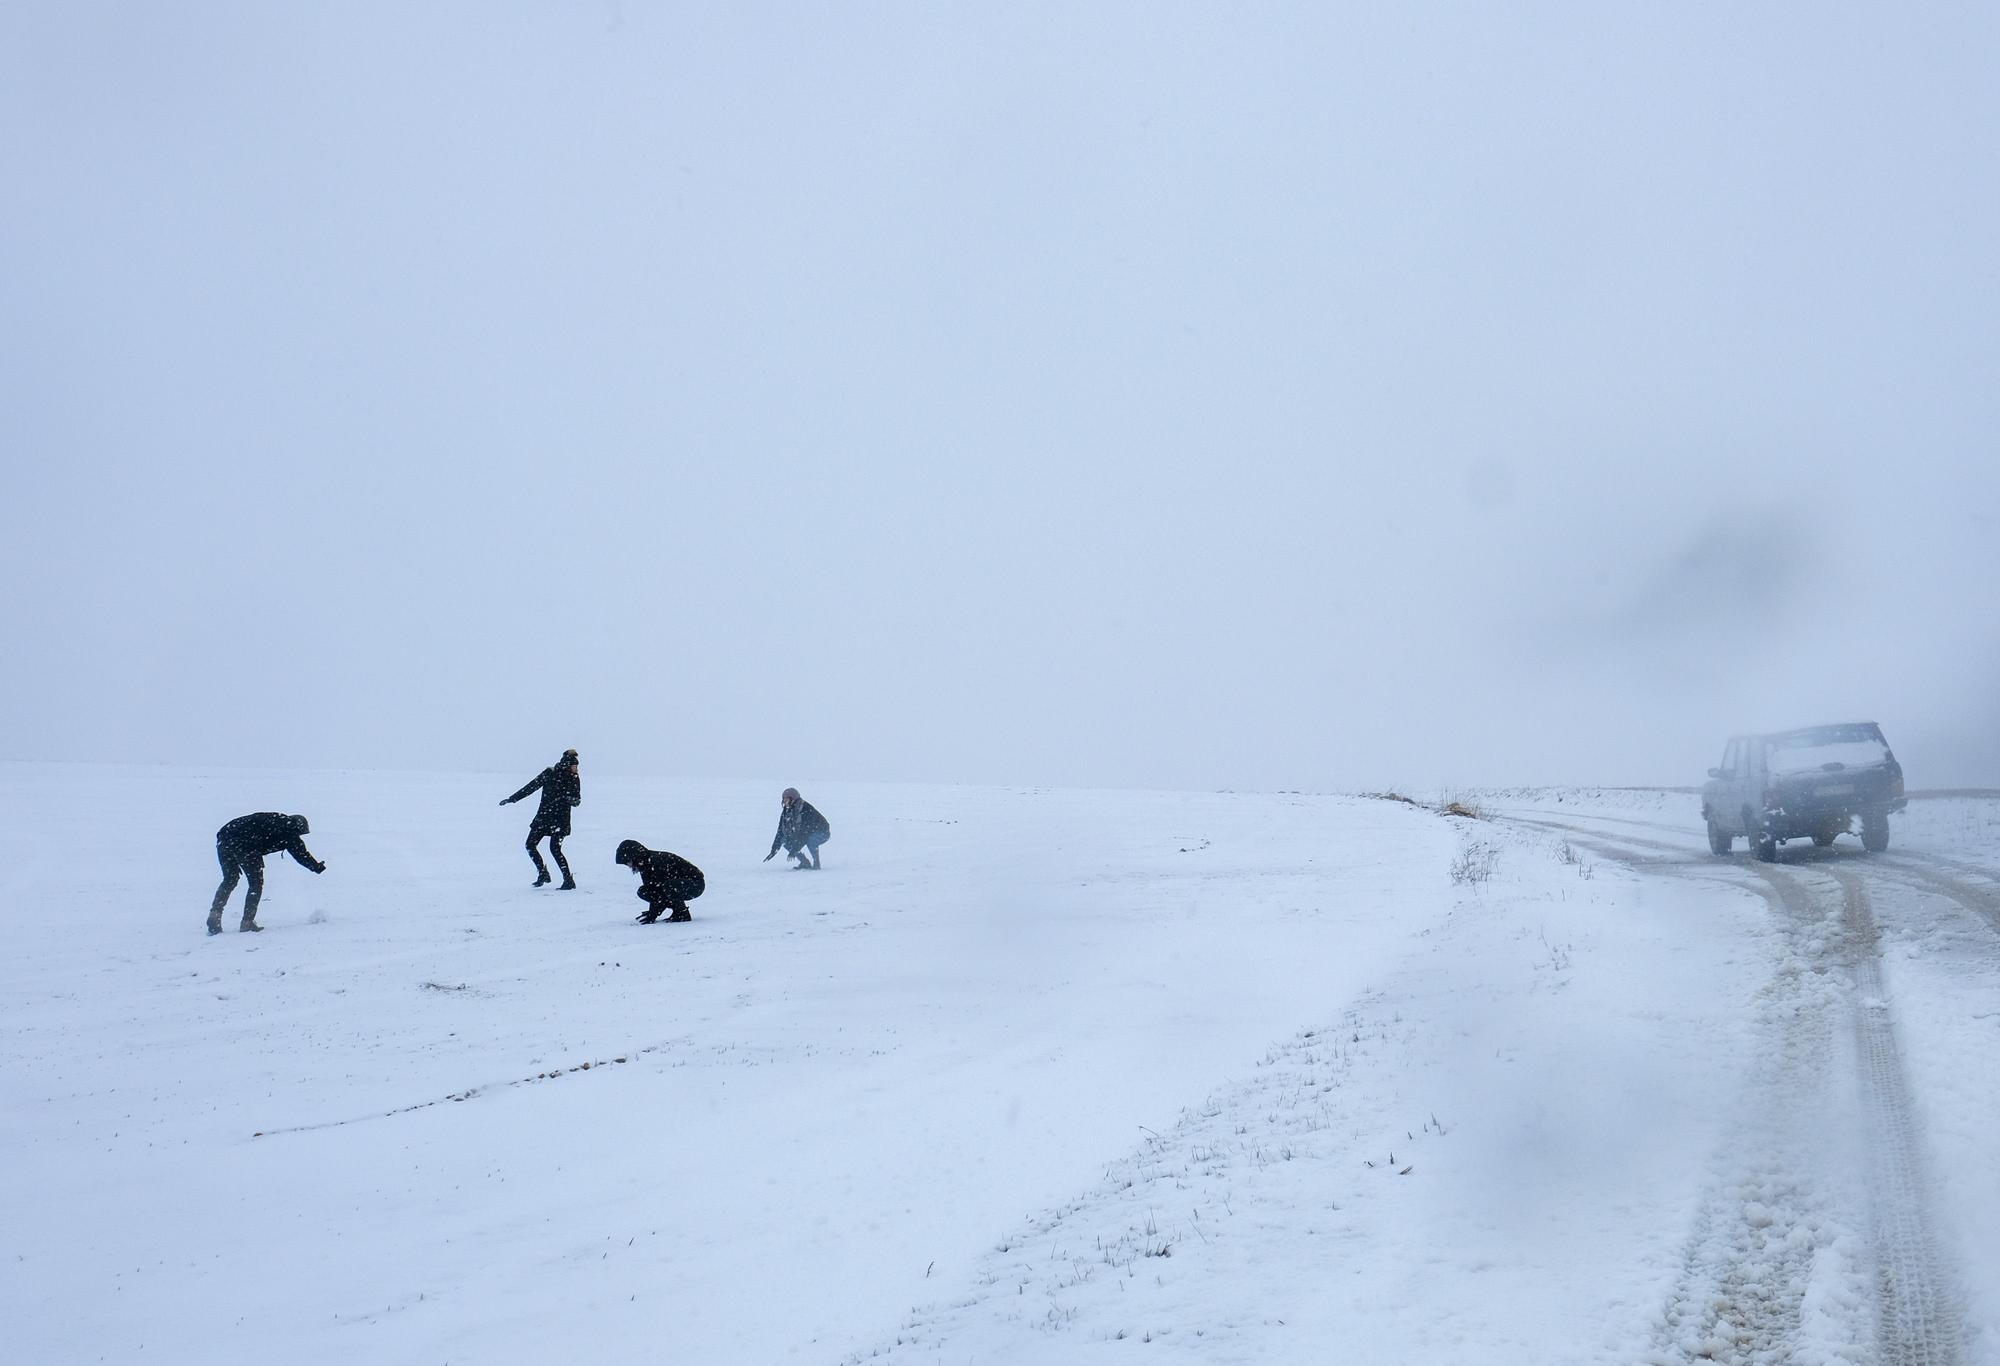 La borrasca Filomena cubre de blanco el interior de la provincia. Unos jóvenes disfrutan de la nieve en la pedanía villenera de La Encina